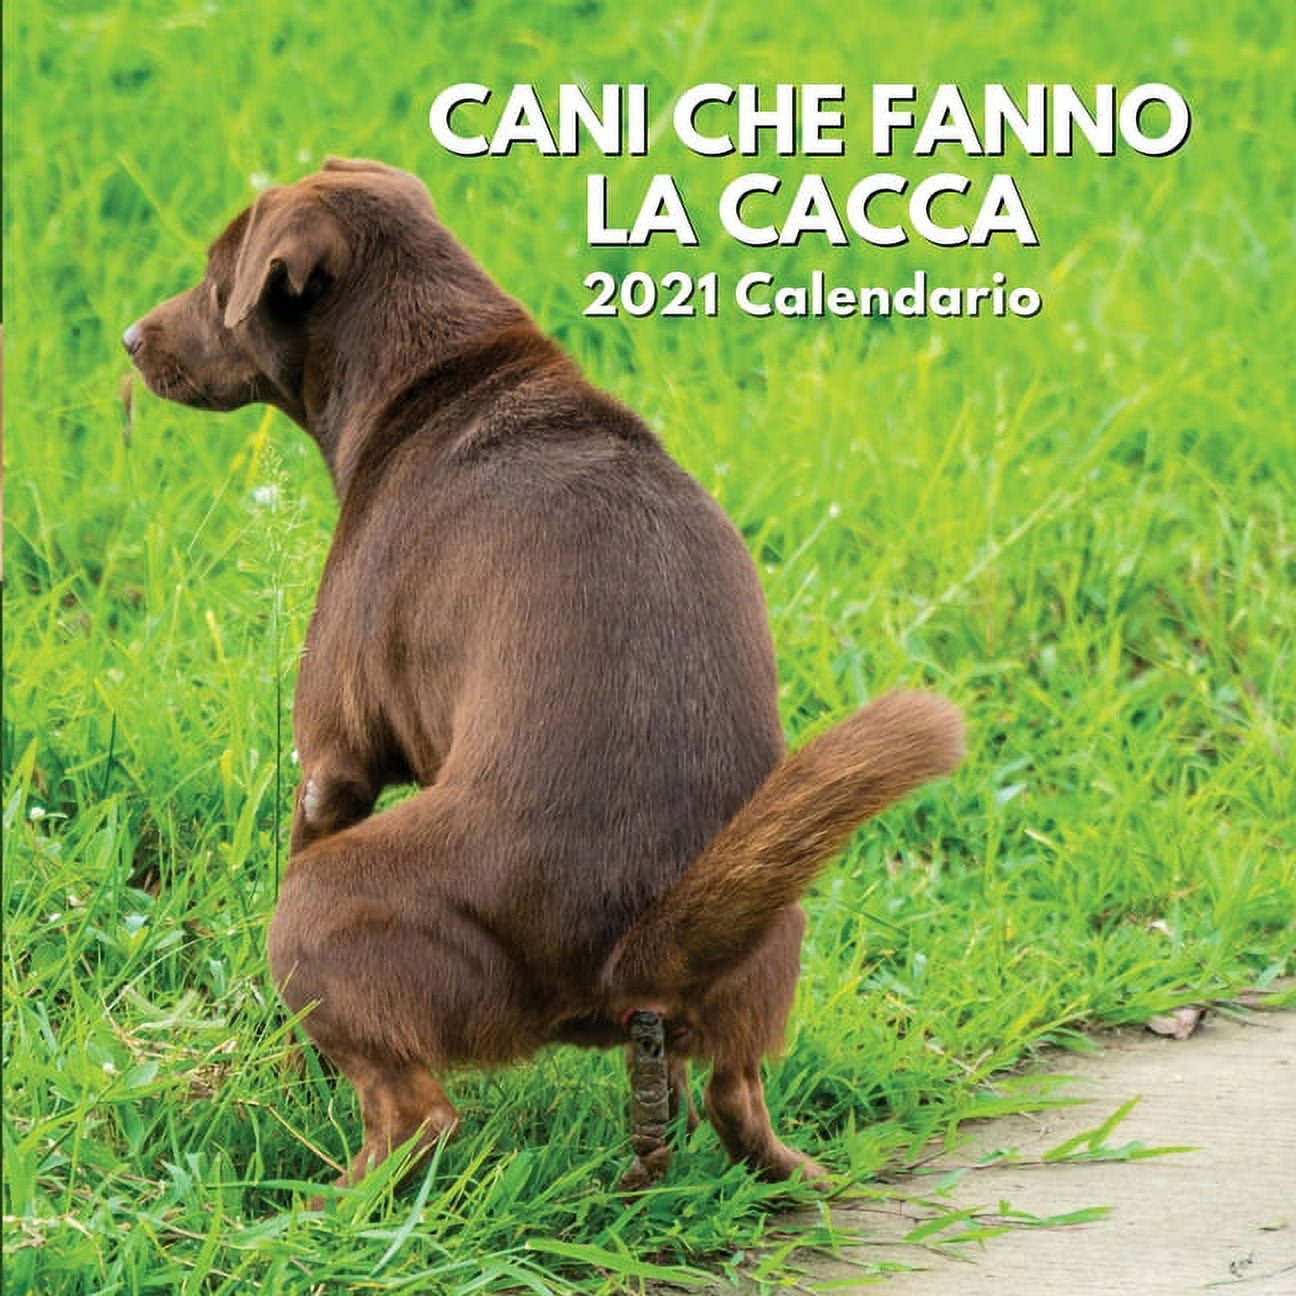 2021 Calendario Cani Che Fanno La Cacca : Cani Regalo (Paperback) 